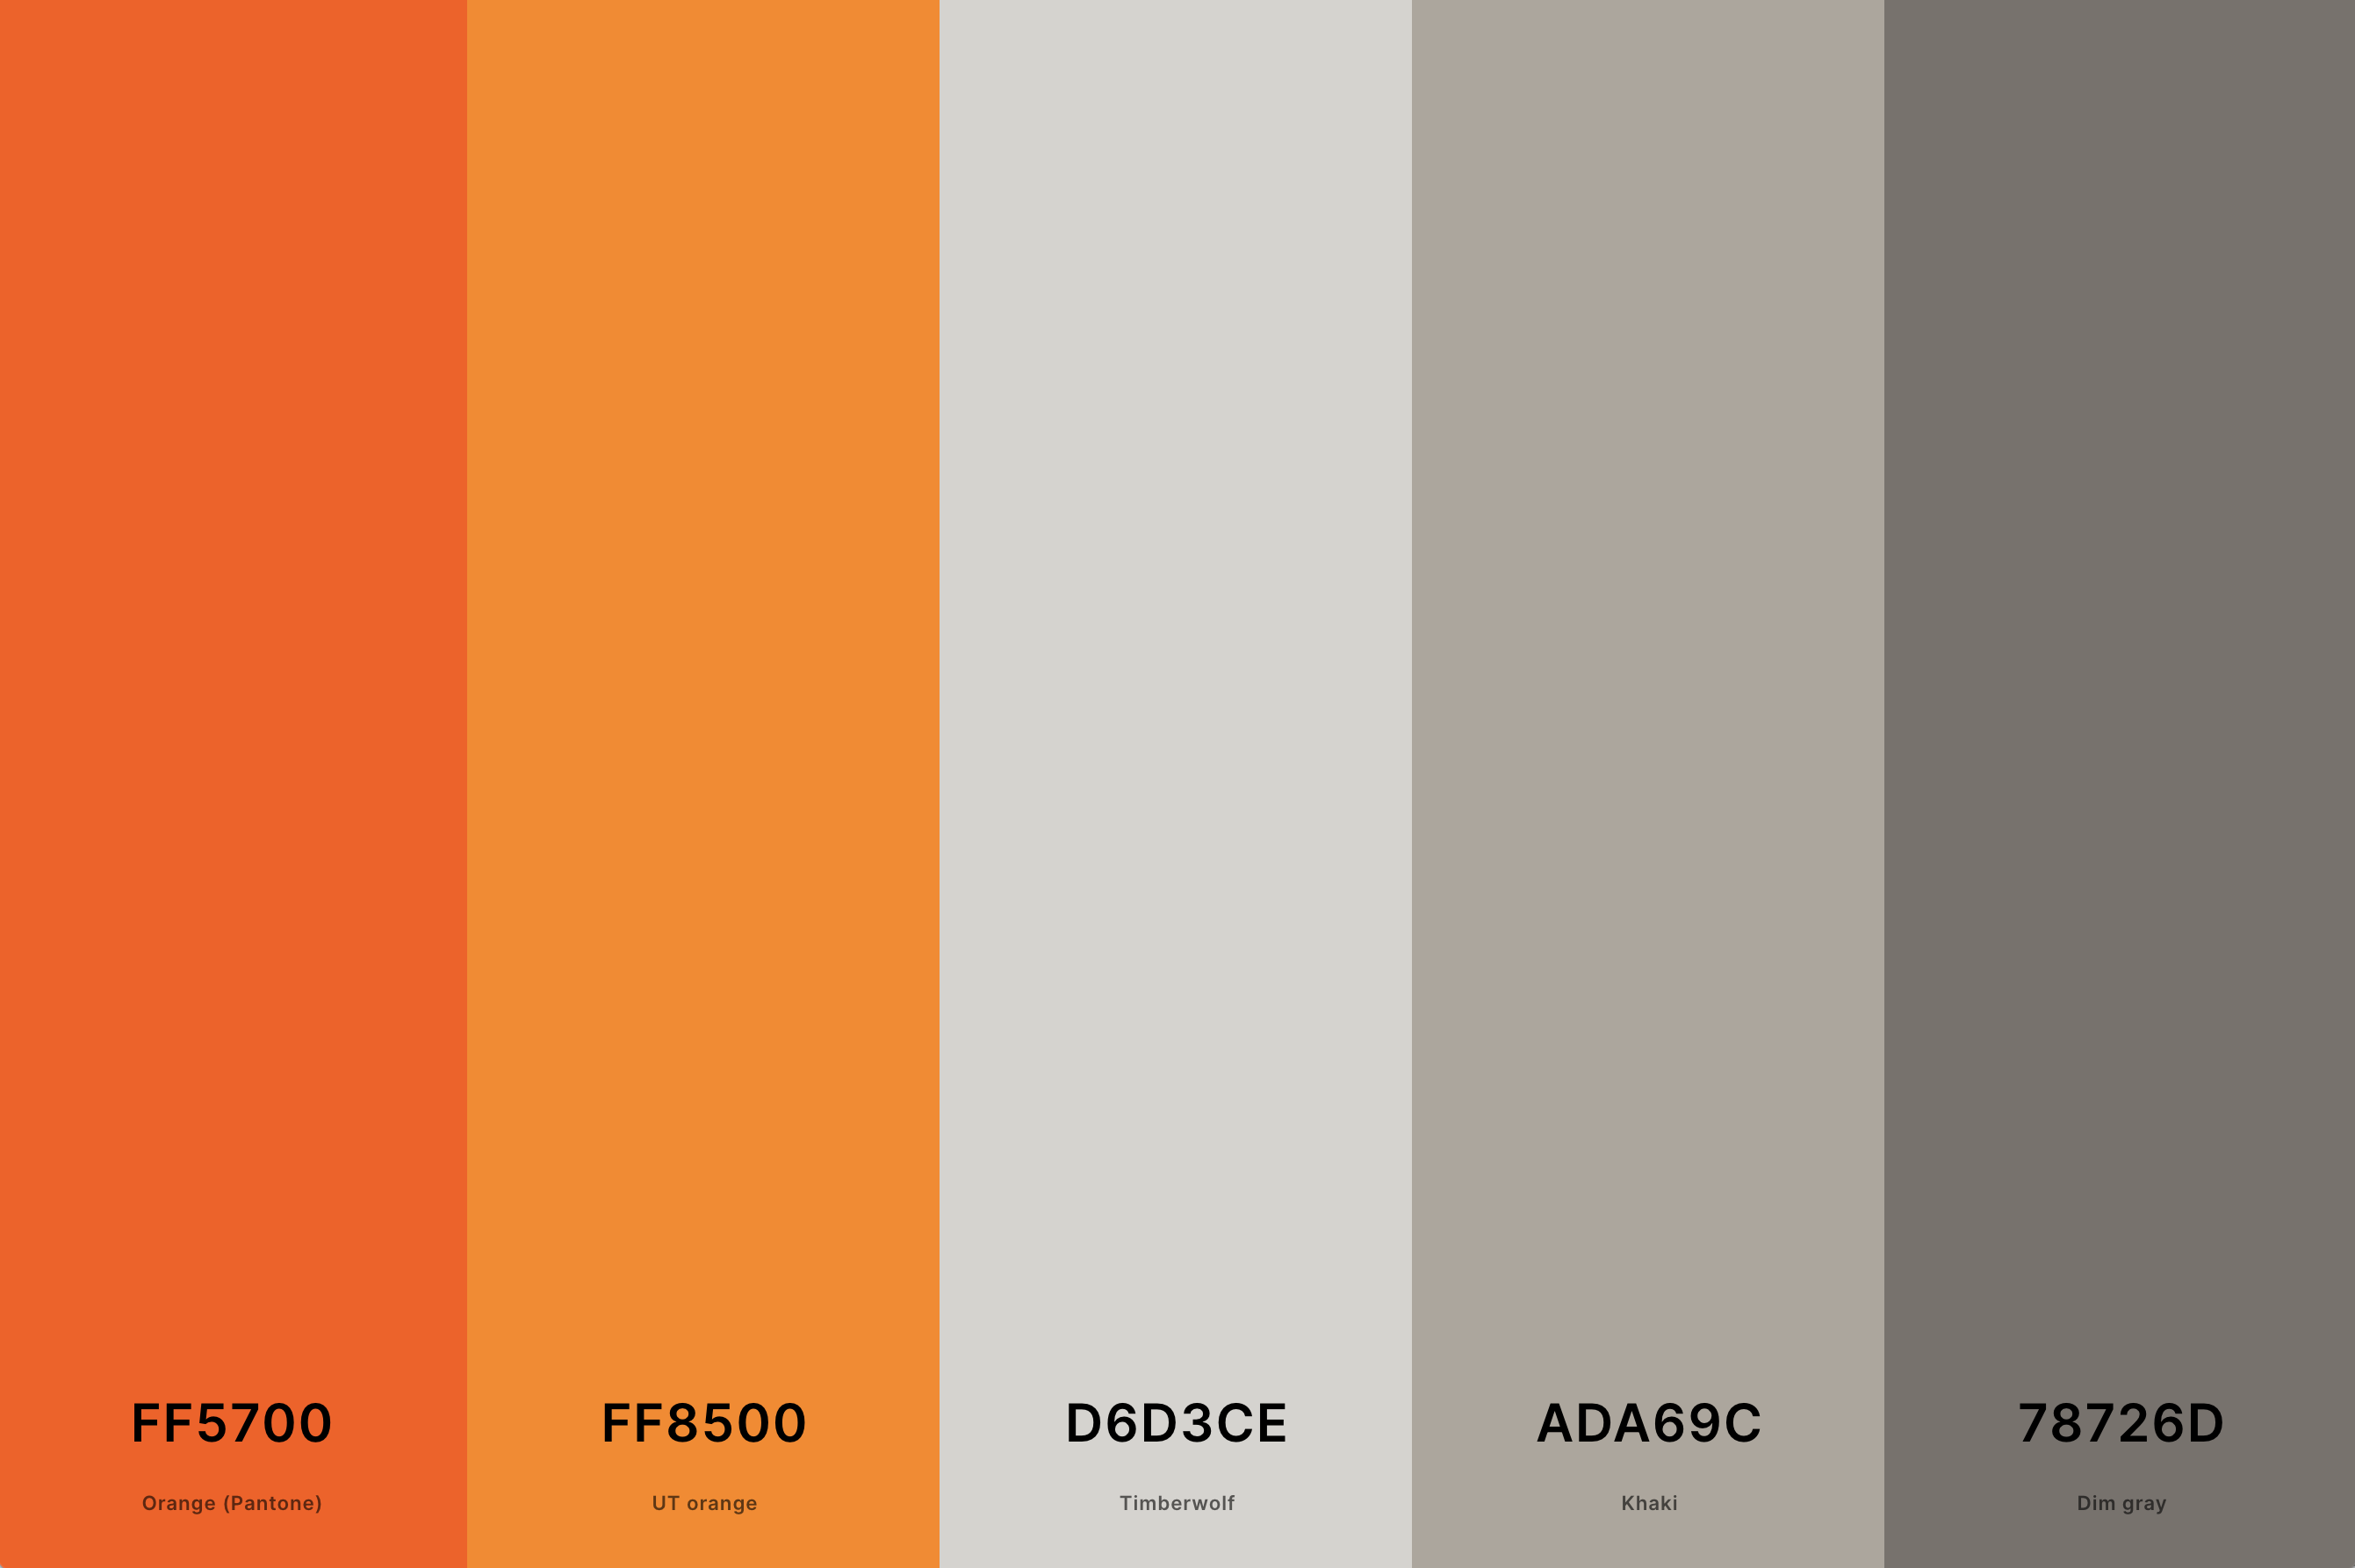 20. Gray And Orange Color Palette Color Palette with Orange (Pantone) (Hex #FF5700) + Ut Orange (Hex #FF8500) + Timberwolf (Hex #D6D3CE) + Khaki (Hex #ADA69C) + Dim Gray (Hex #78726D) Color Palette with Hex Codes